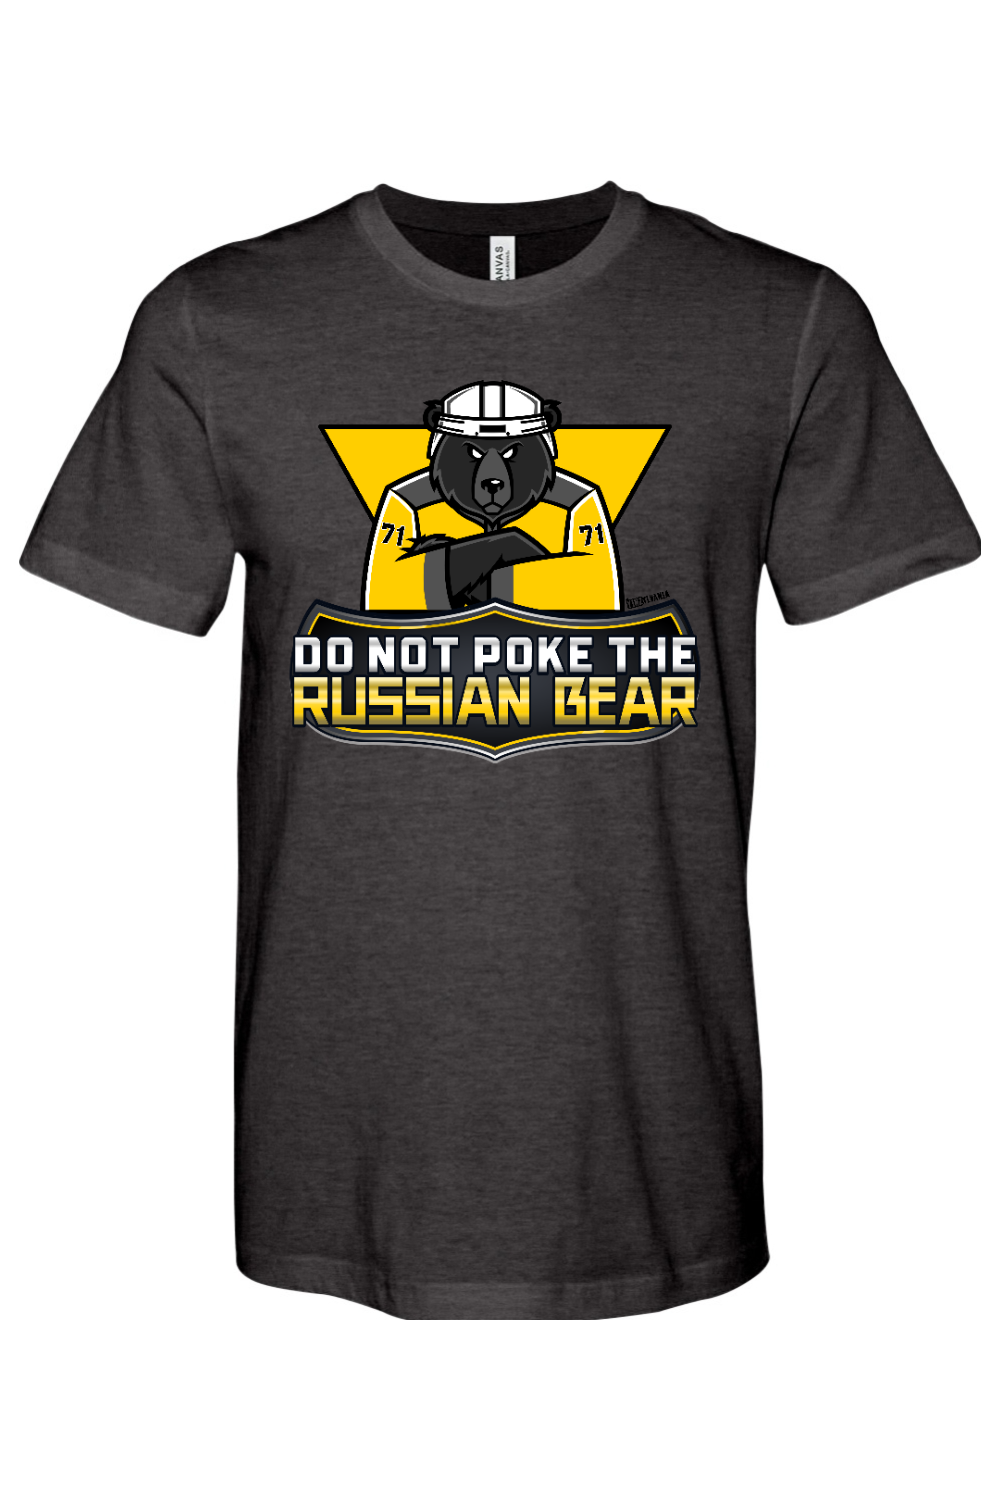 Do Not Poke the Russian Bear - Yinzylvania